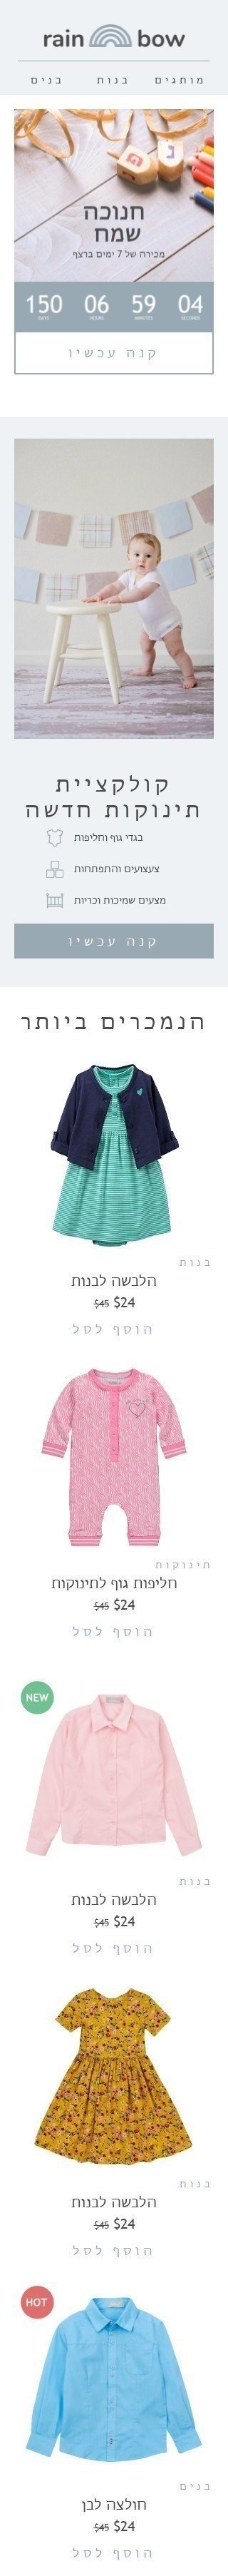 Hanukkah E-Mail-Vorlage «Verkauf 7 Tage in Folge» für Mode-Branche Ansicht auf Mobilgeräten